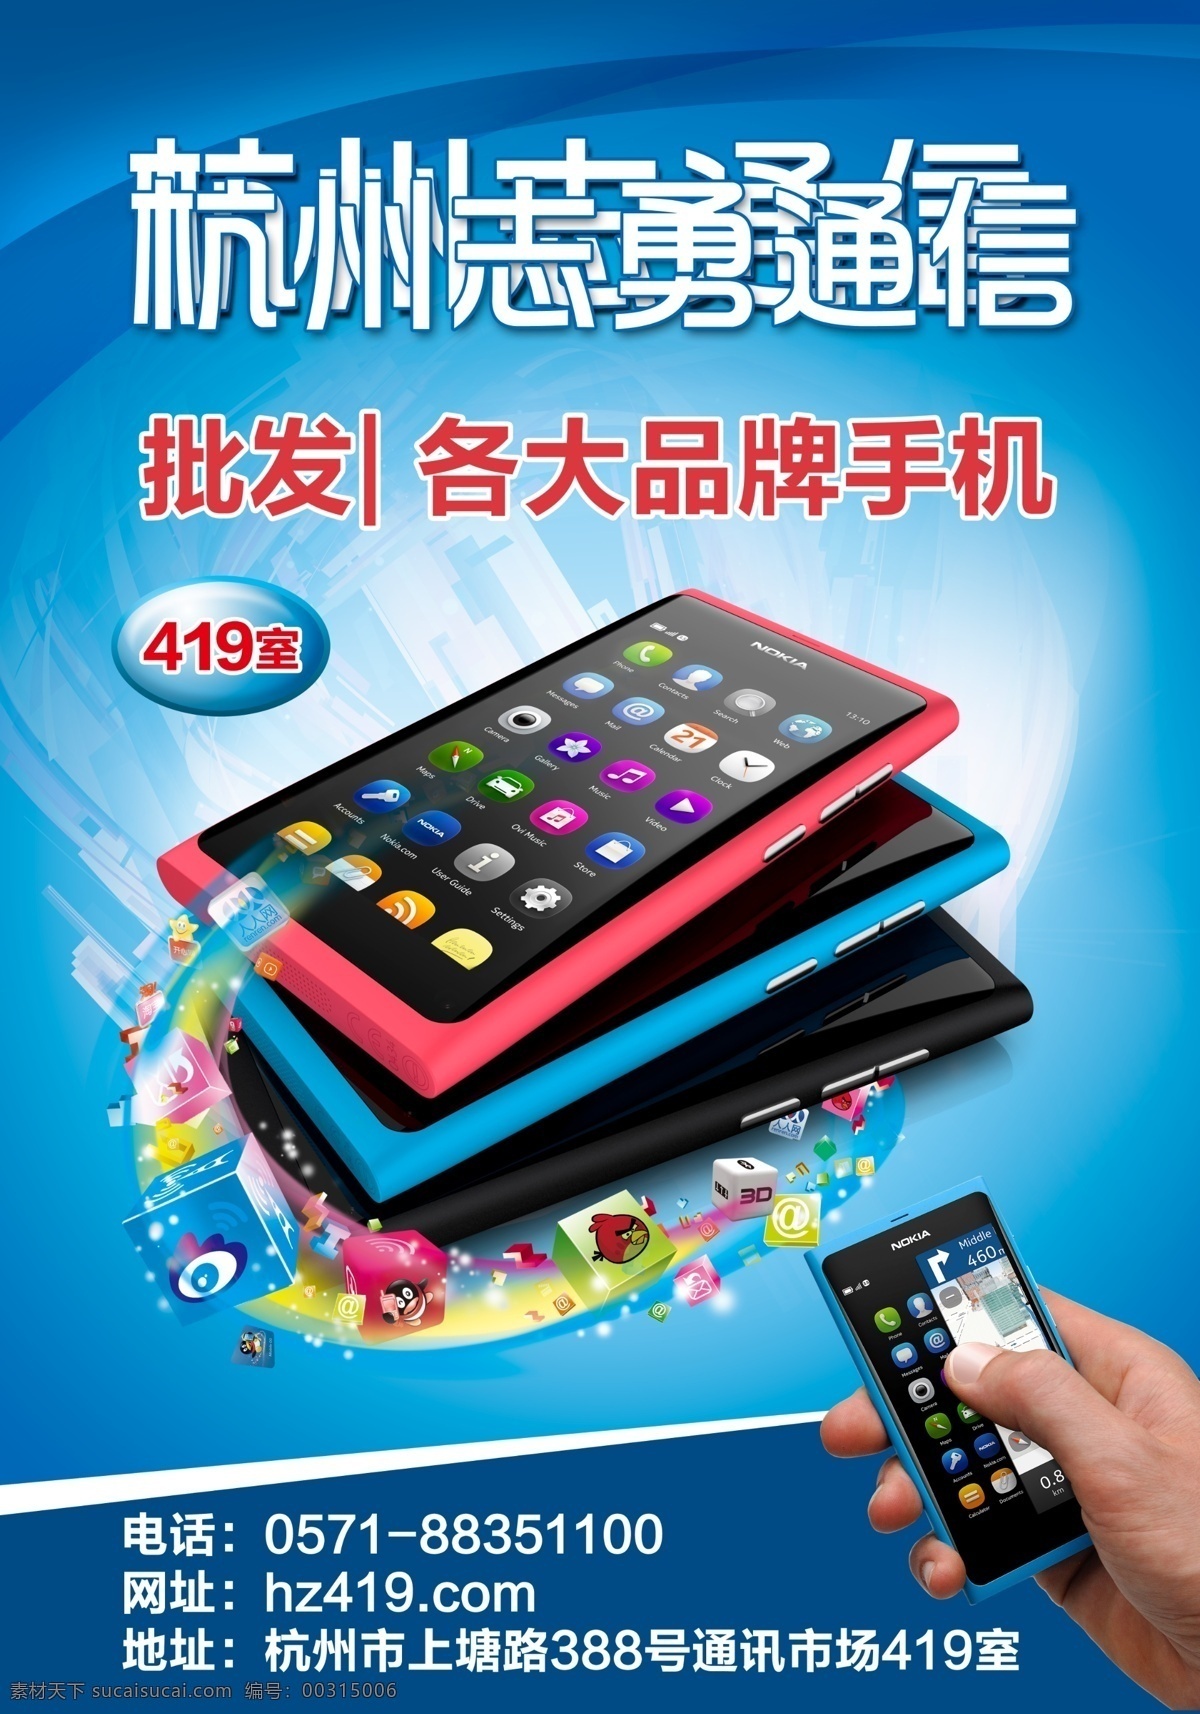 诺基亚 n9 海报 模板 手机批发 诺基亚n9 3g智能手机 科技 手拿手机 炫彩蓝色 广告设计模板 源文件 psd素材 红色